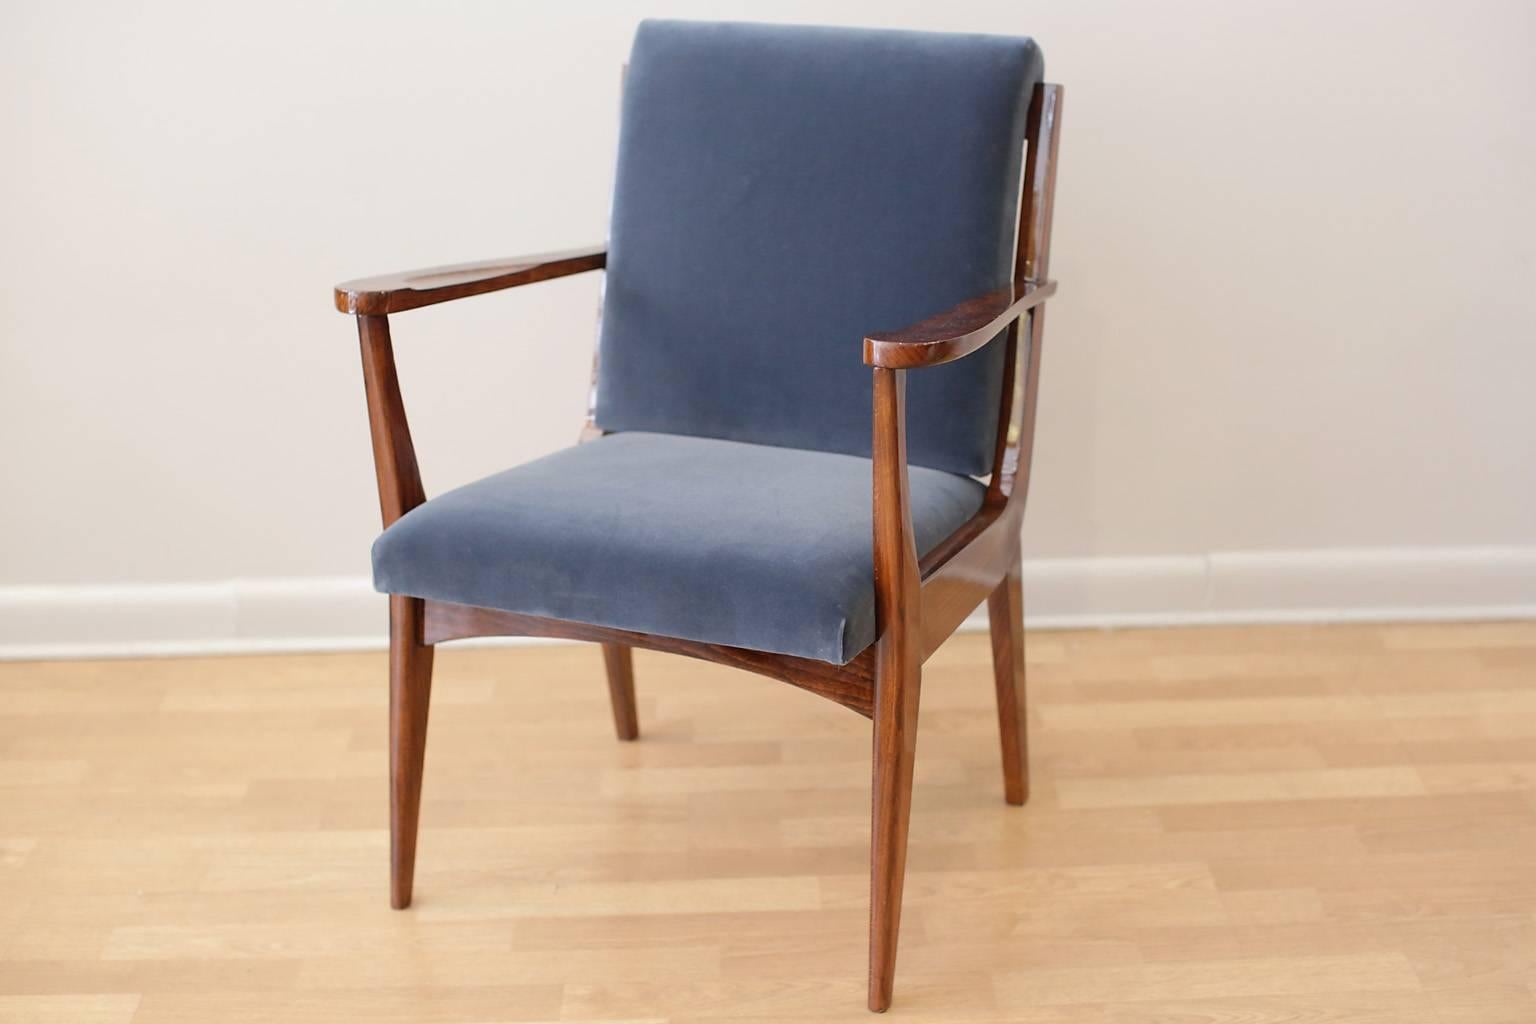 Bridge or desk chair.
Walnut newly upholstered in vintage silk velvet fabric.